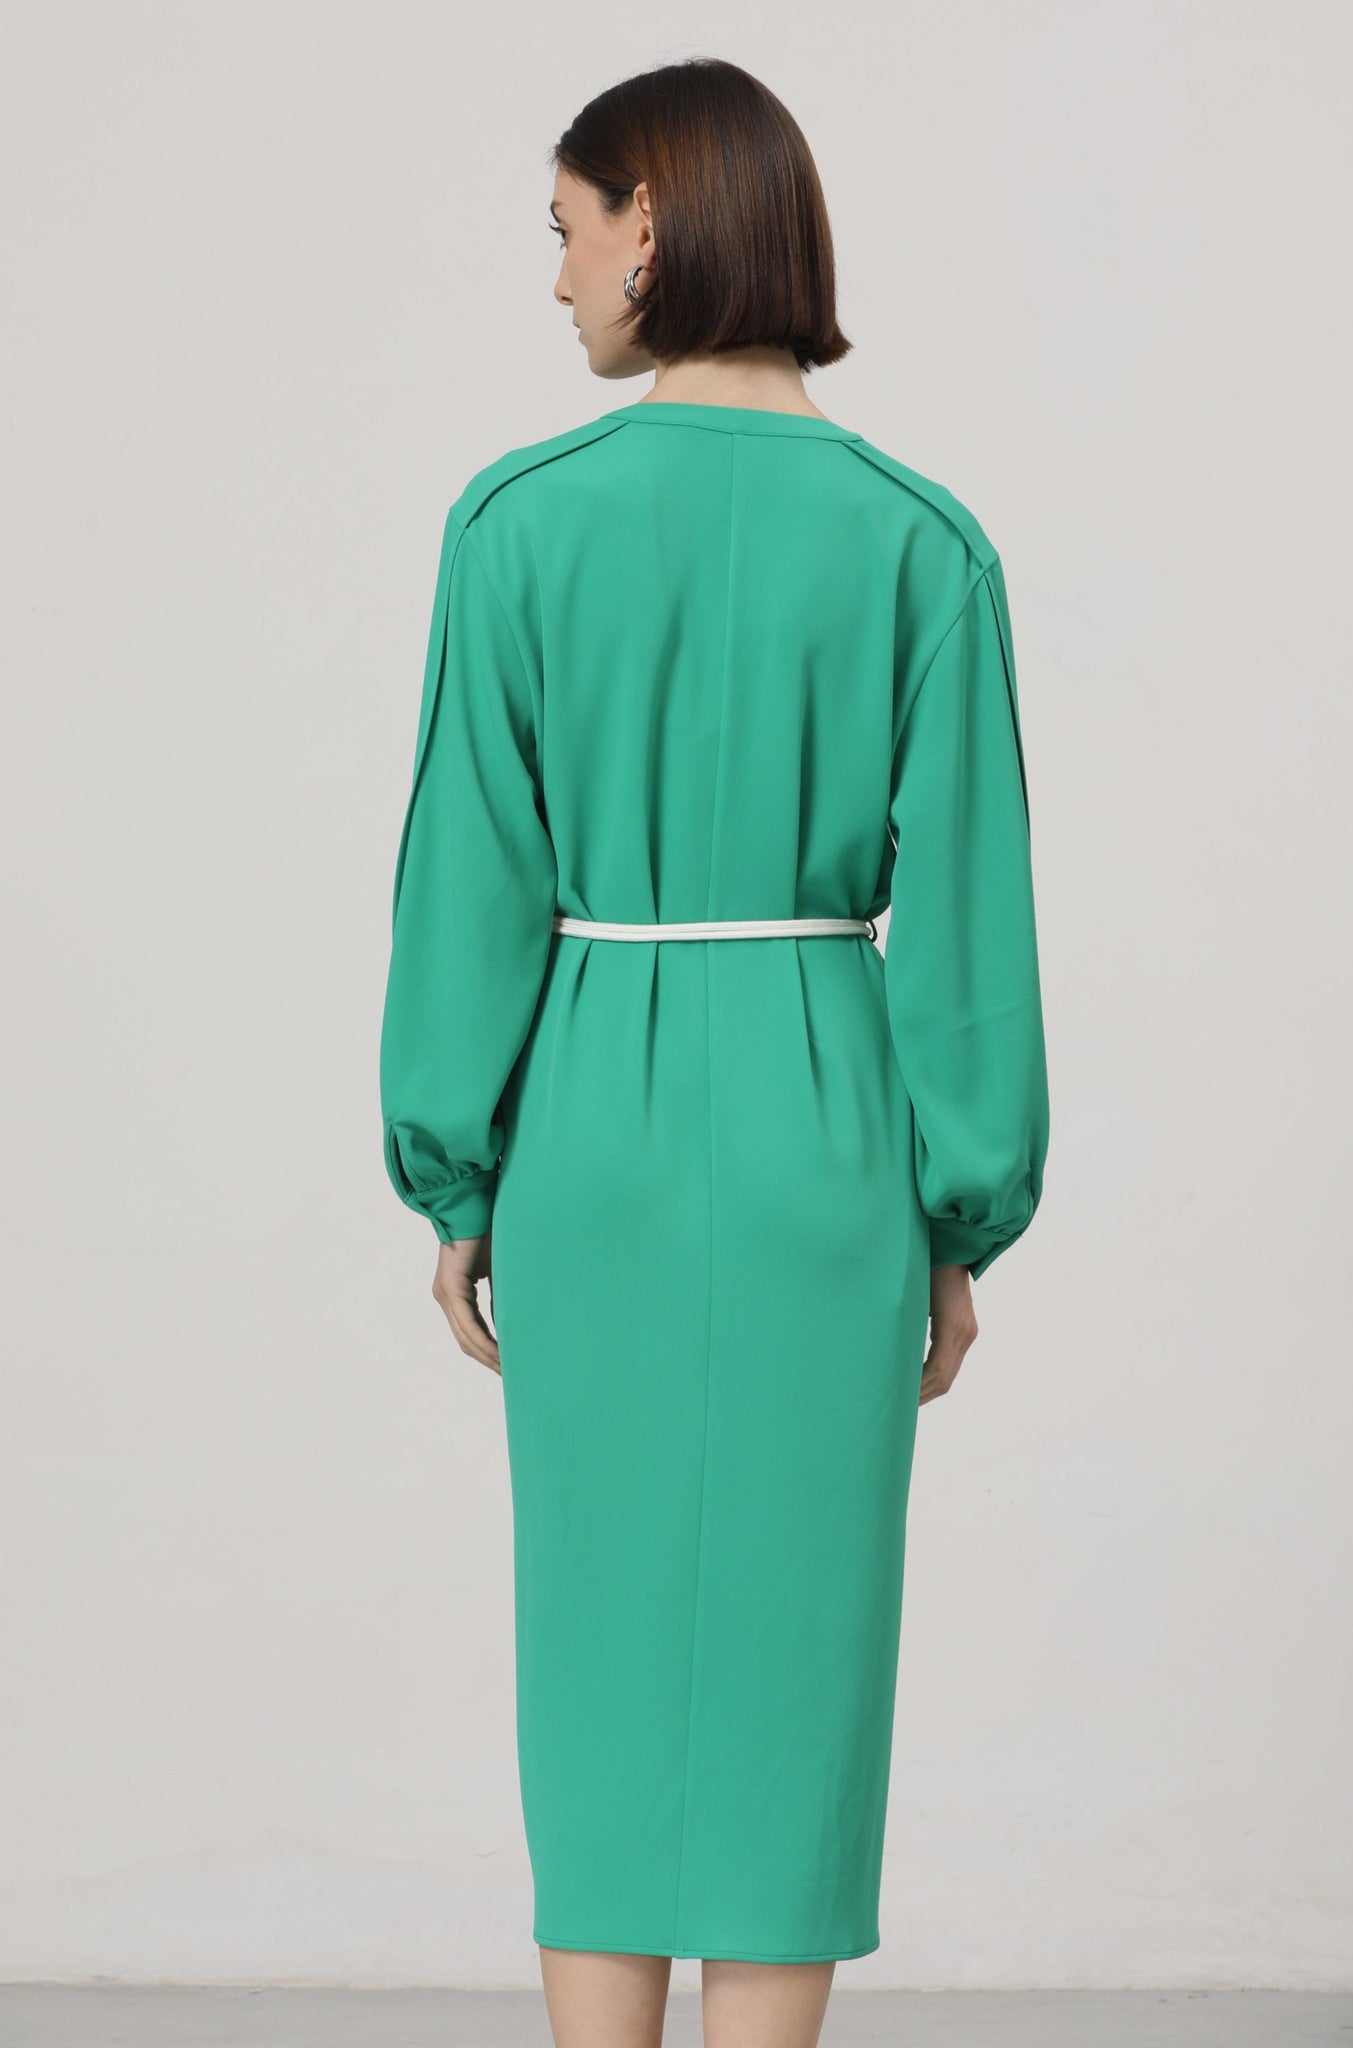 LINDONG | Lillou Green V-Neck Belted Dress